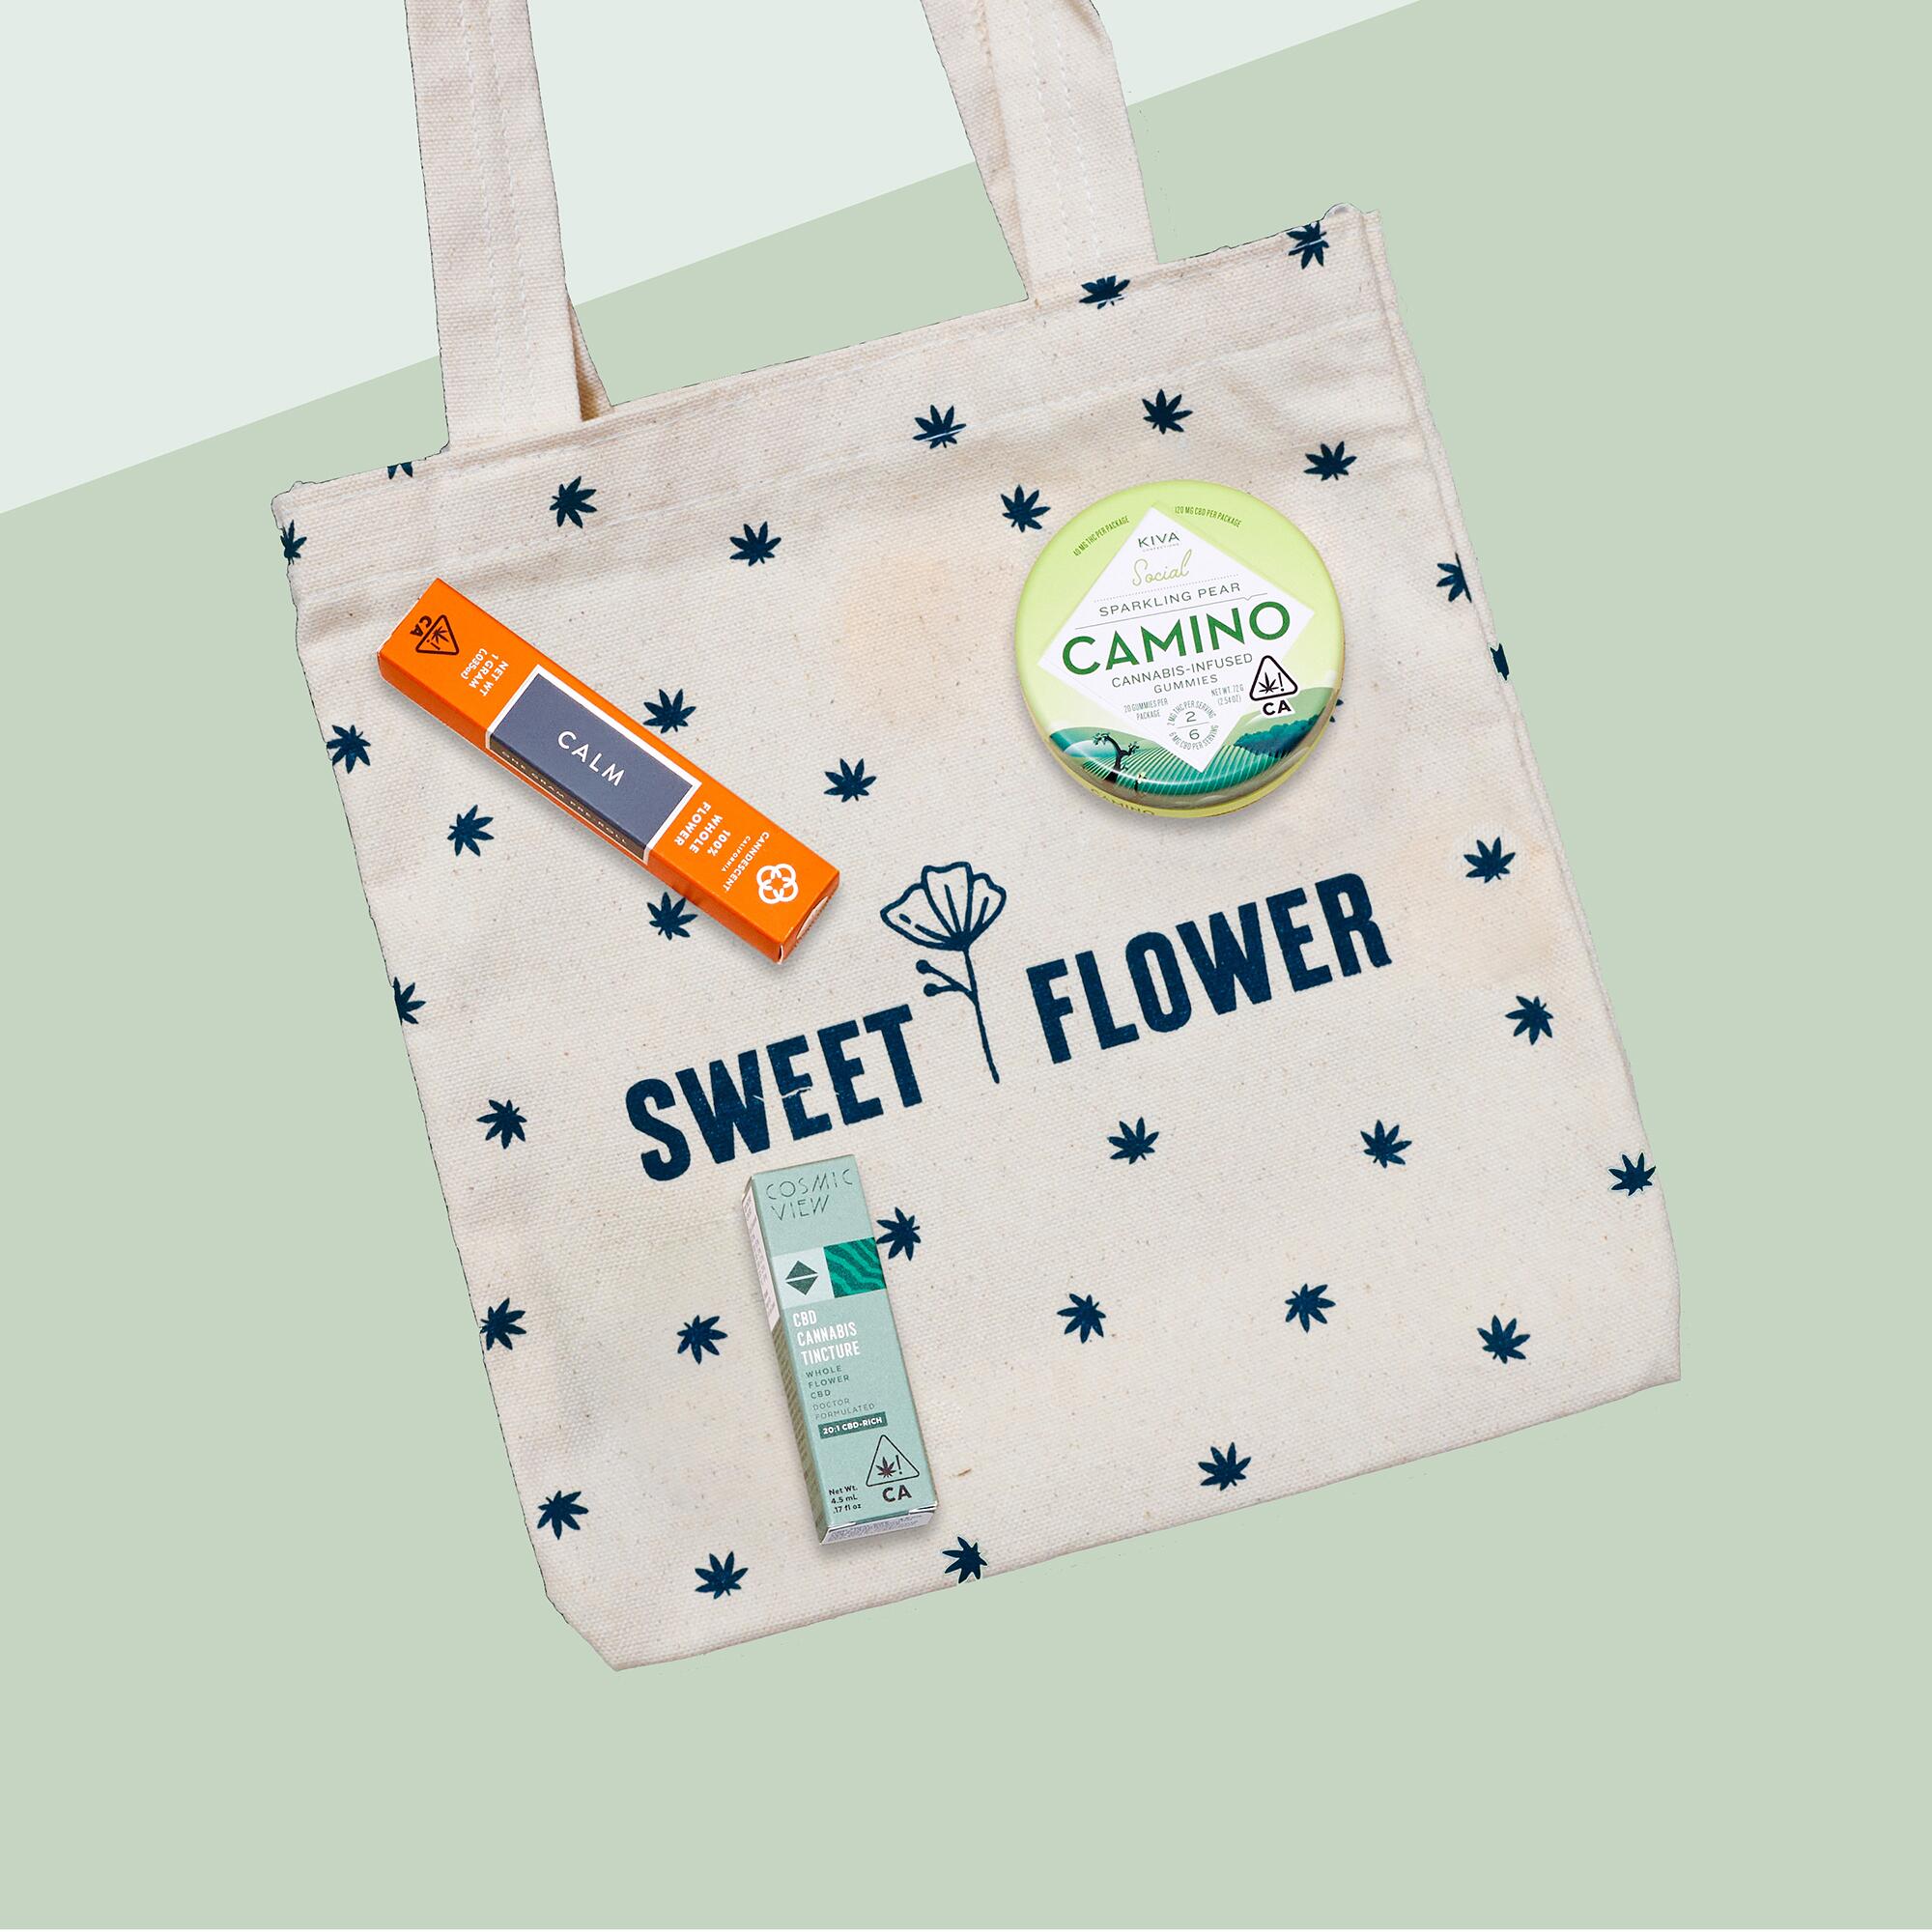 Sweet Flower kit